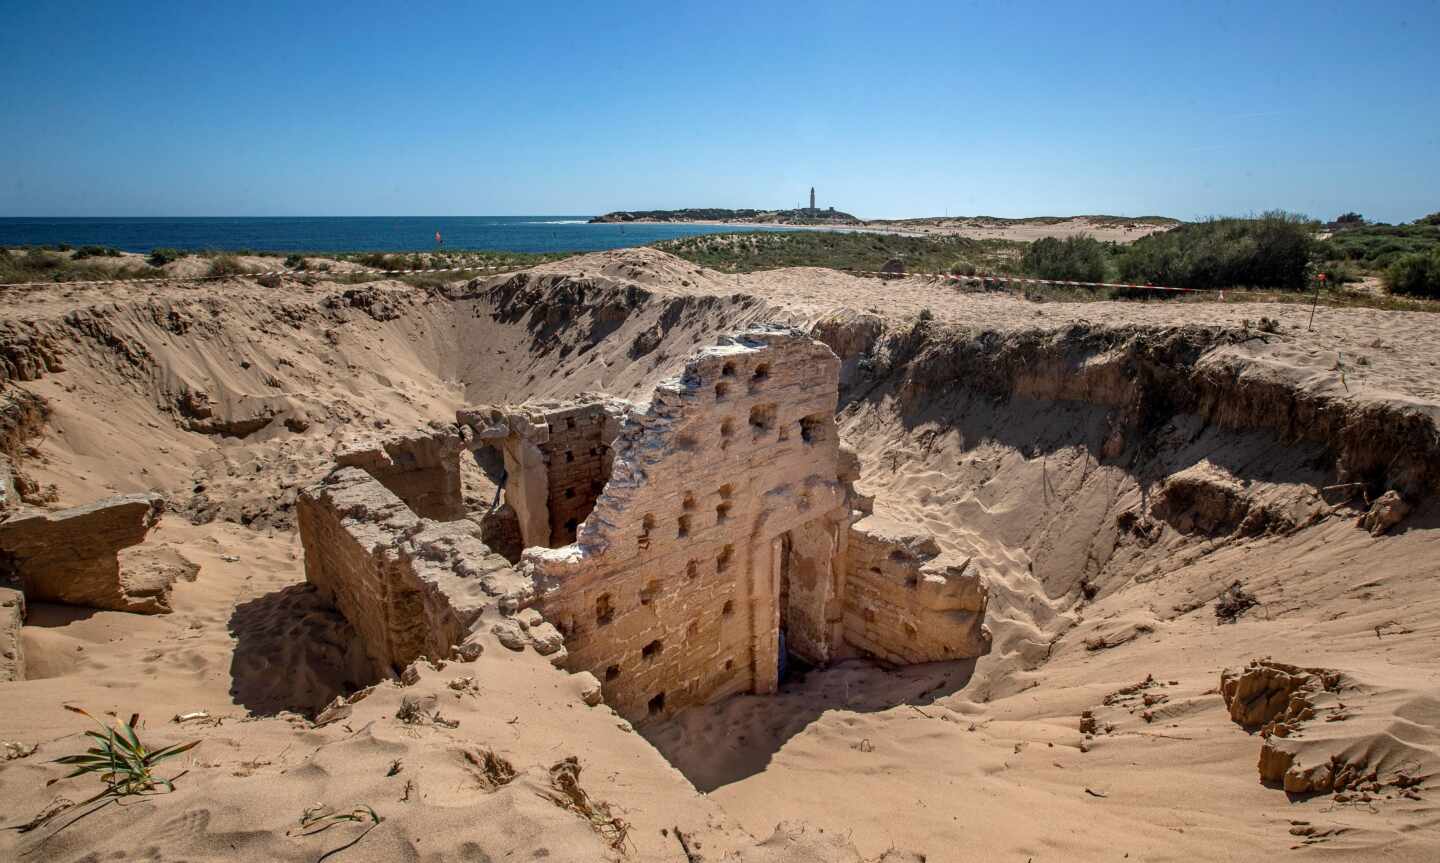 Terma romana descubierta en el cabo de Trafalgar (Cádiz).